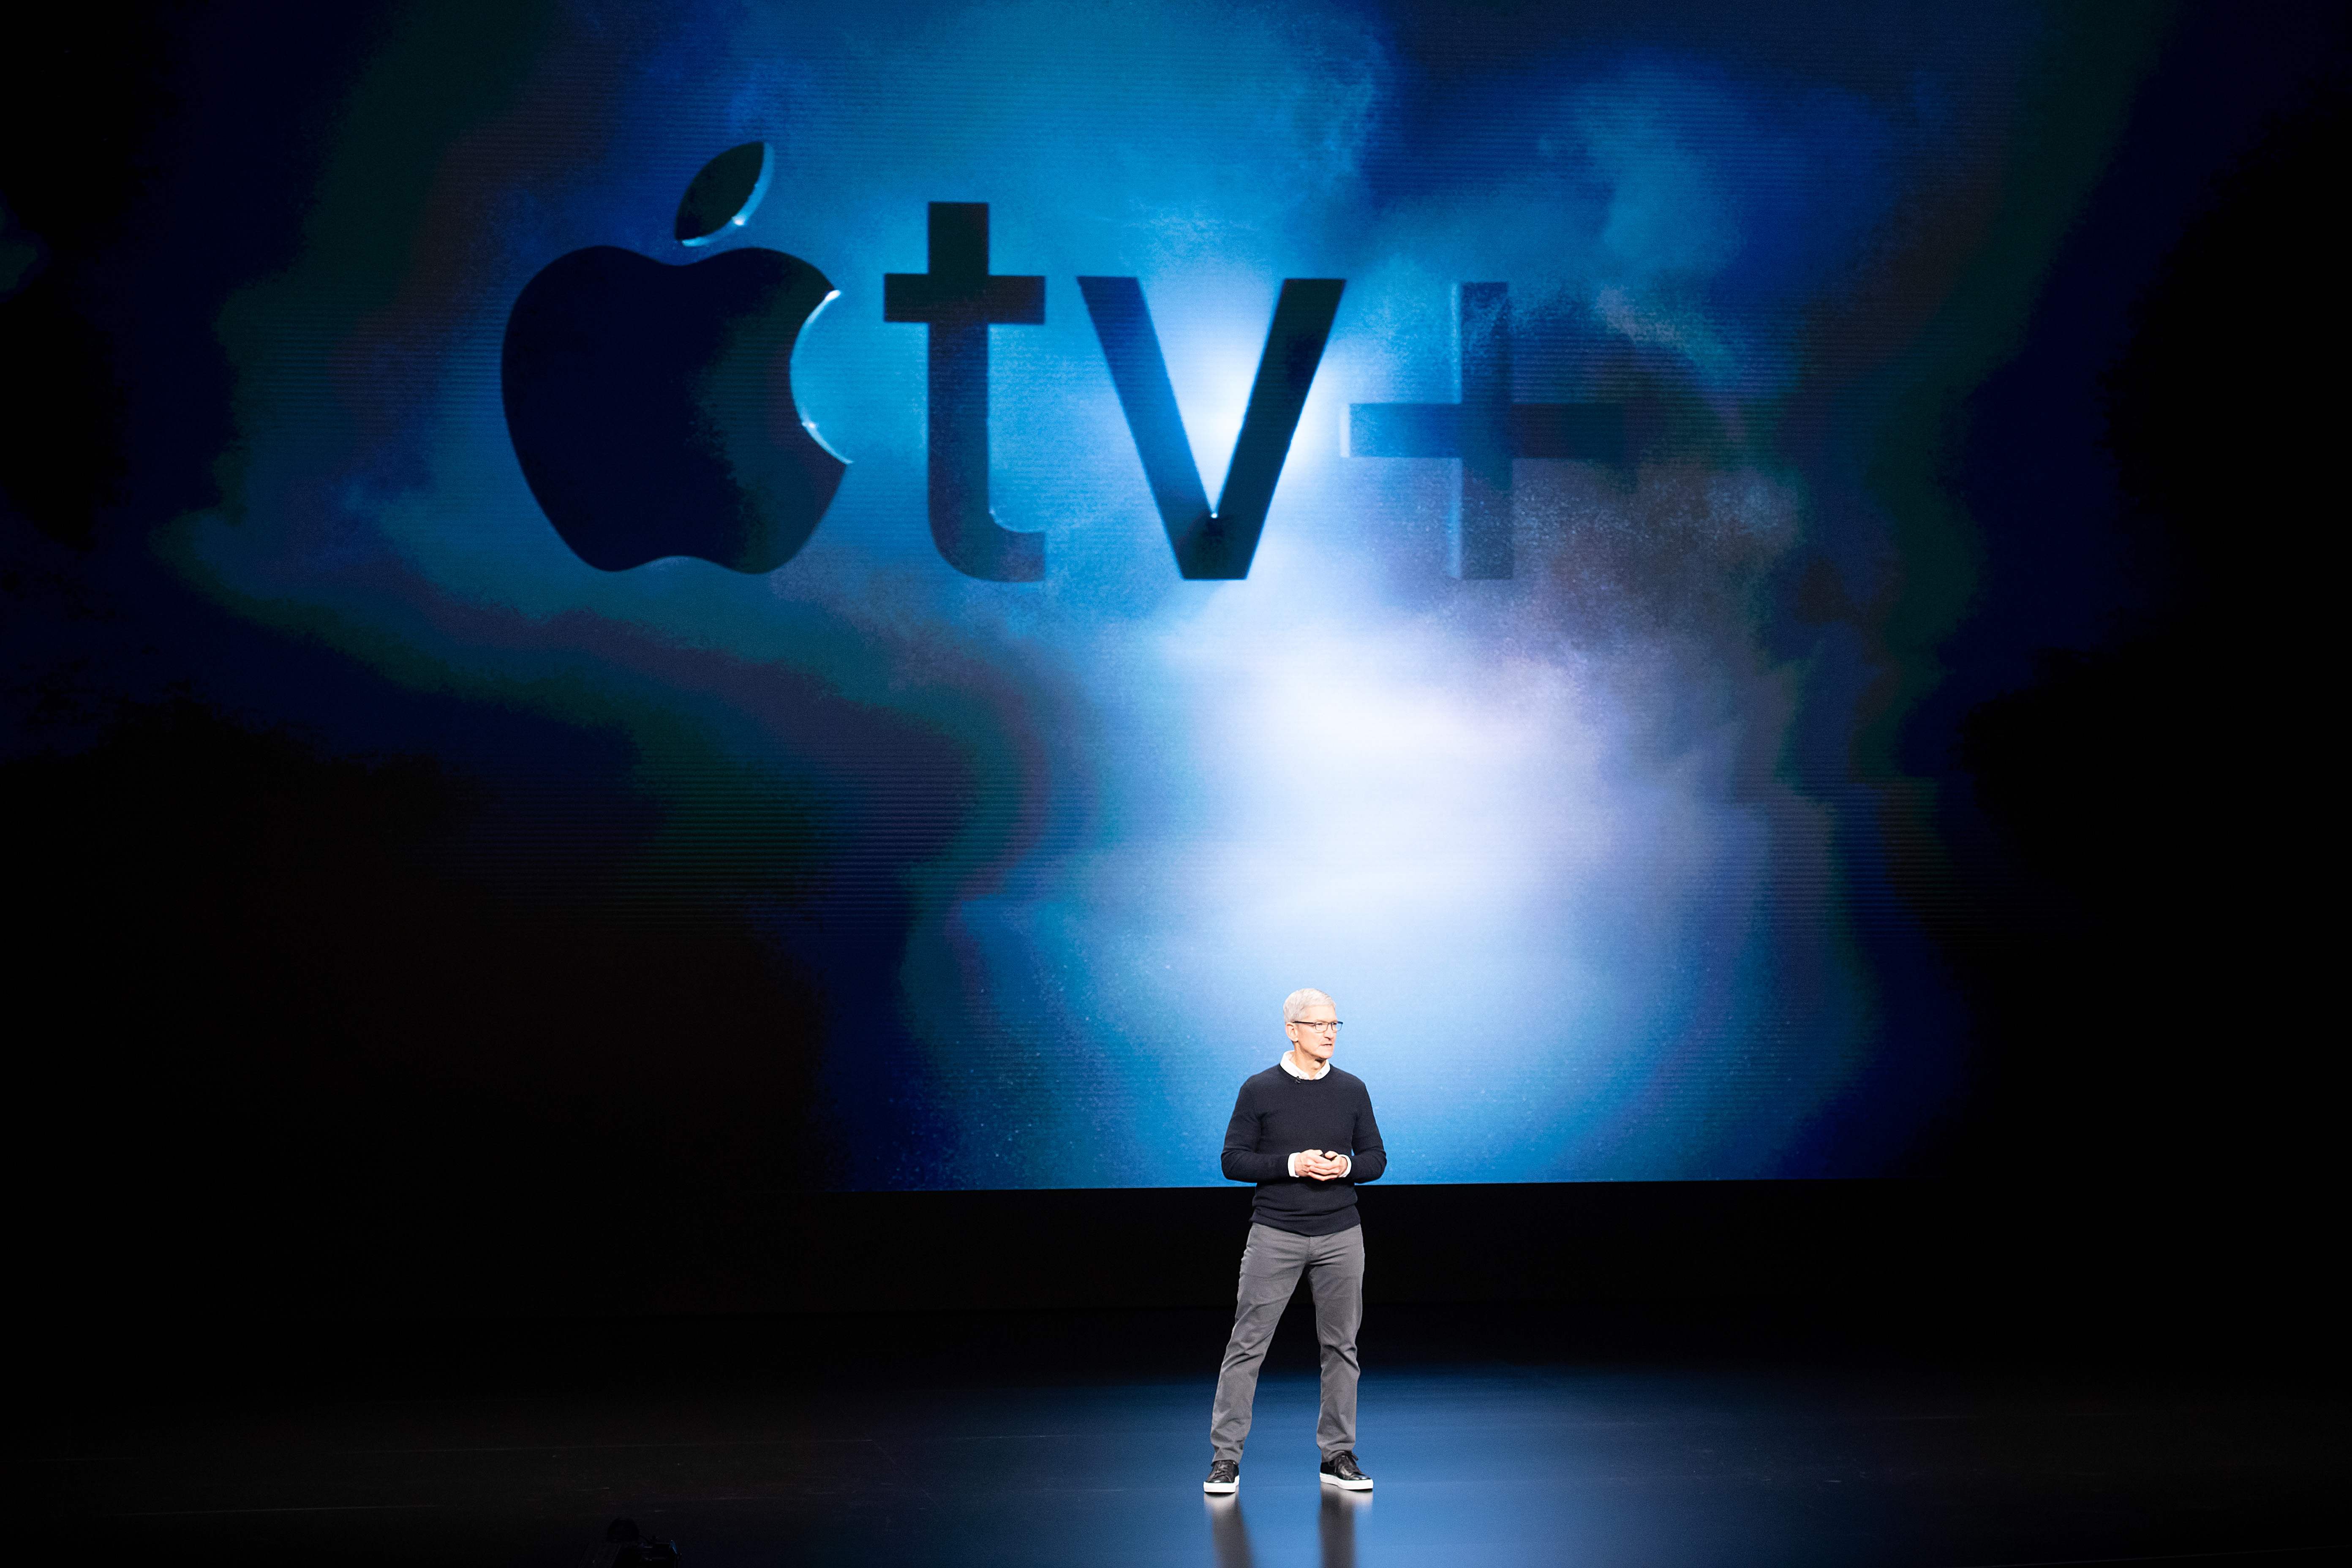 Tim Cook presenta el servicio de "streaming": "Apple tv+", con el que Apple busca competir en la industria del contenido bajo demanda. (Foto Prensa Libre: AFP)